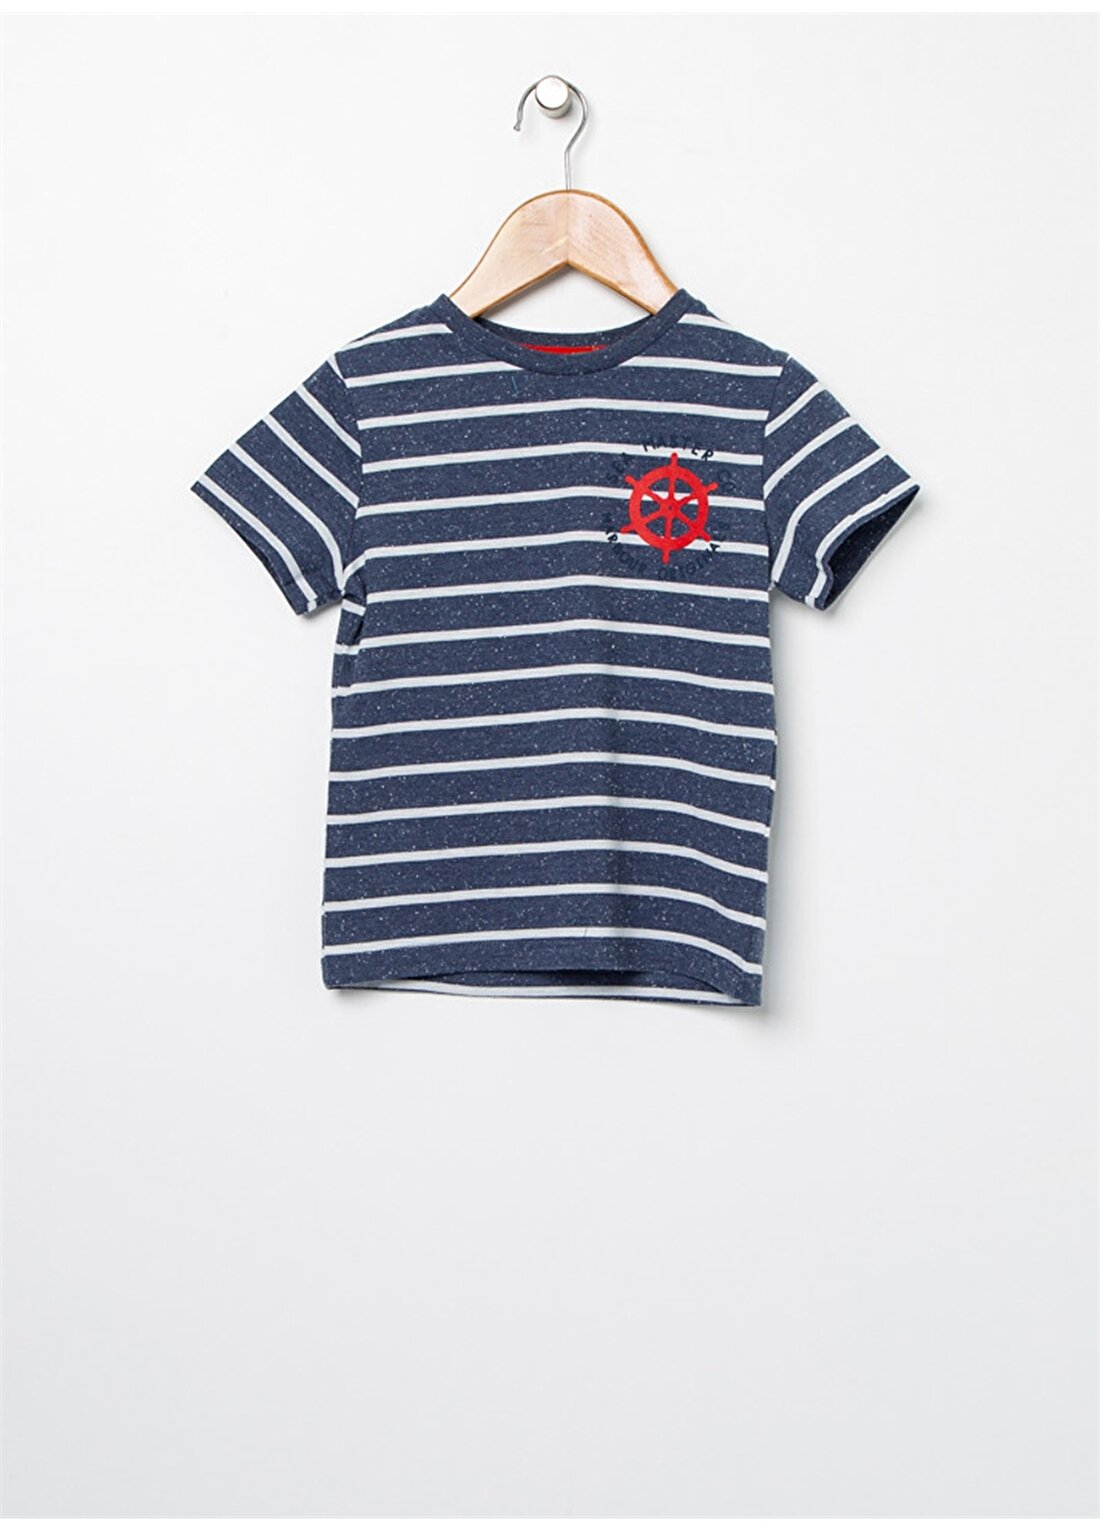 Limon Portboy Lacivert - Beyaz Çizgi Desenli Erkek Çocuk T-Shirt